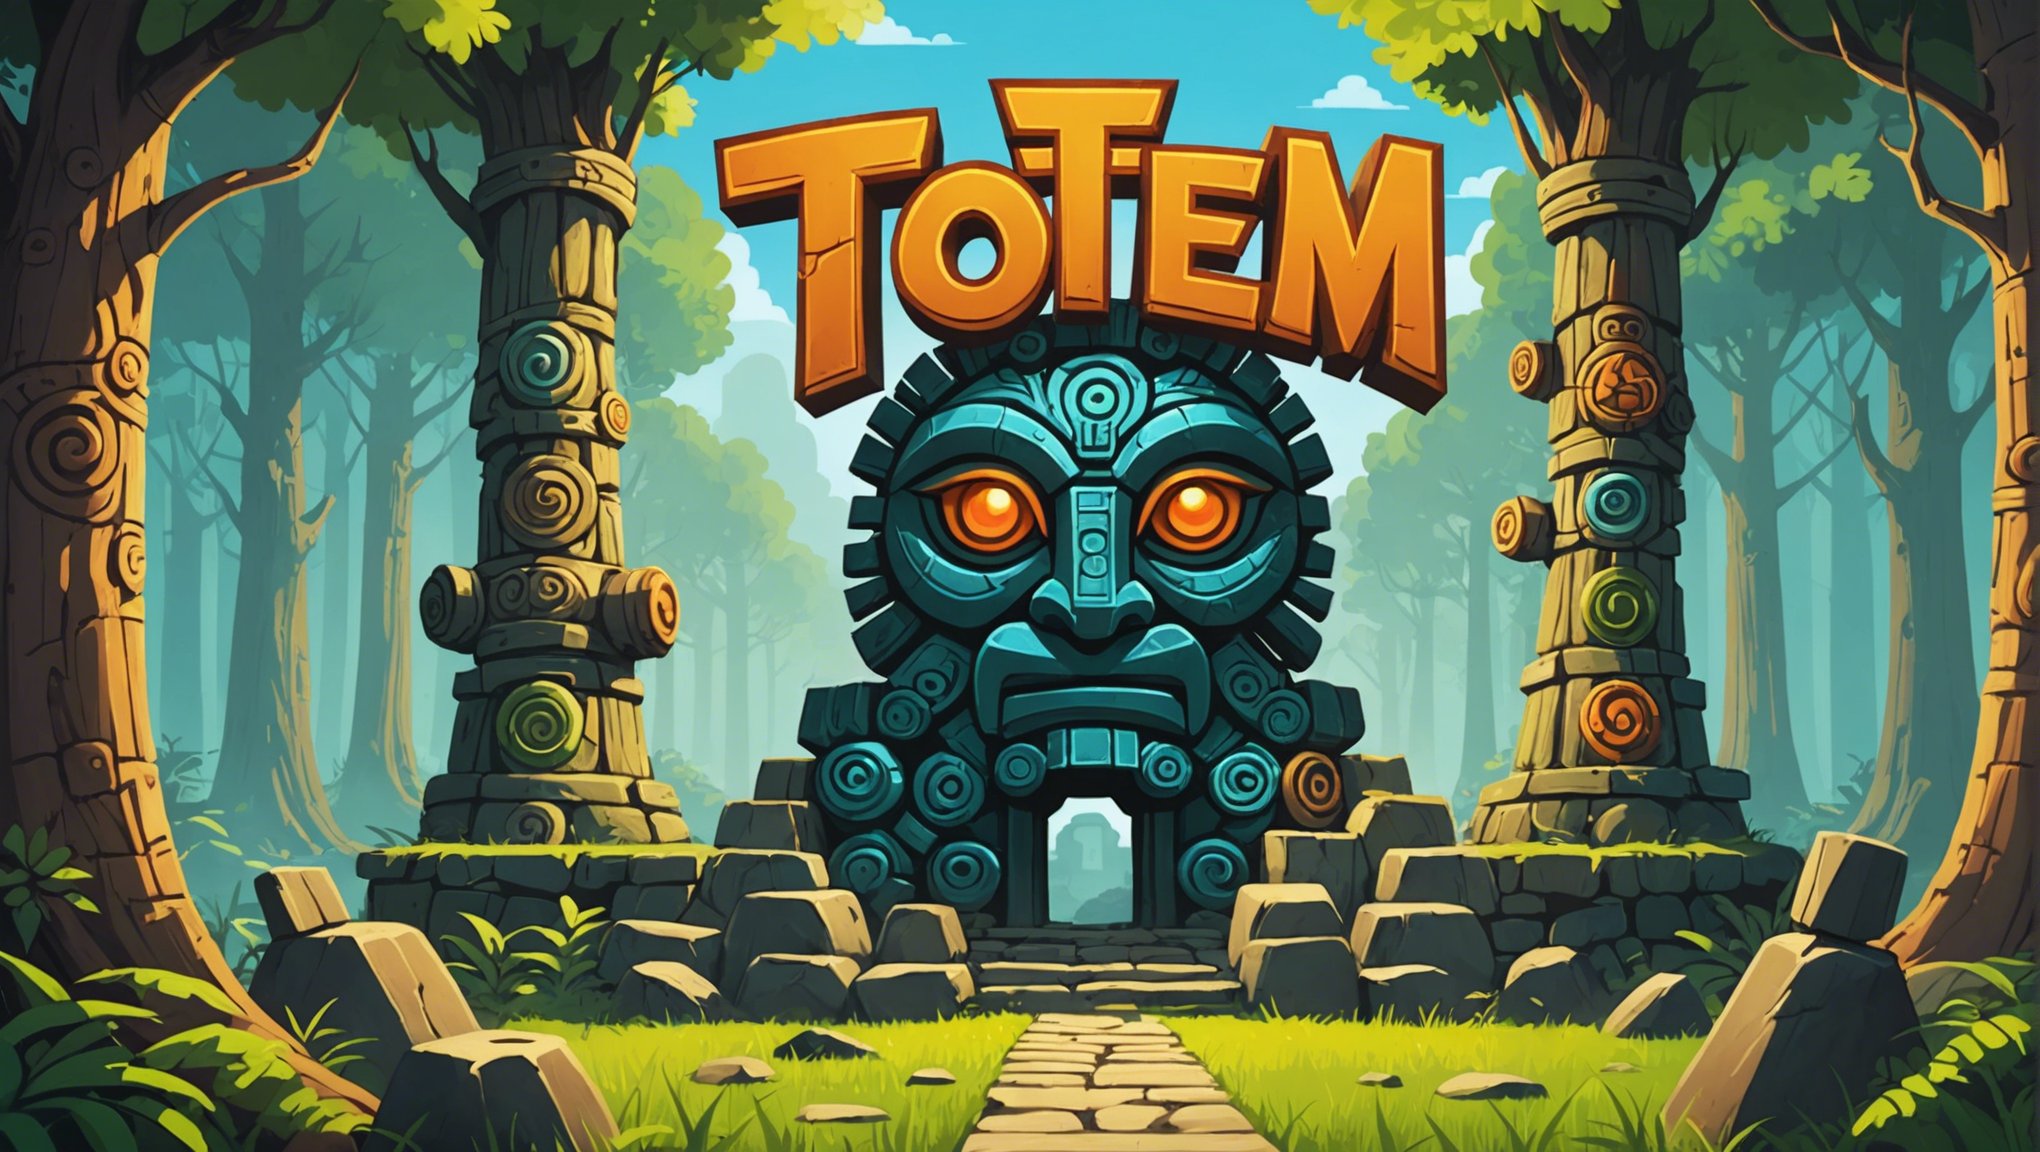 découvrez totem, le jeu qui fait du bien, une impressionnante expérience d'édification personnelle.